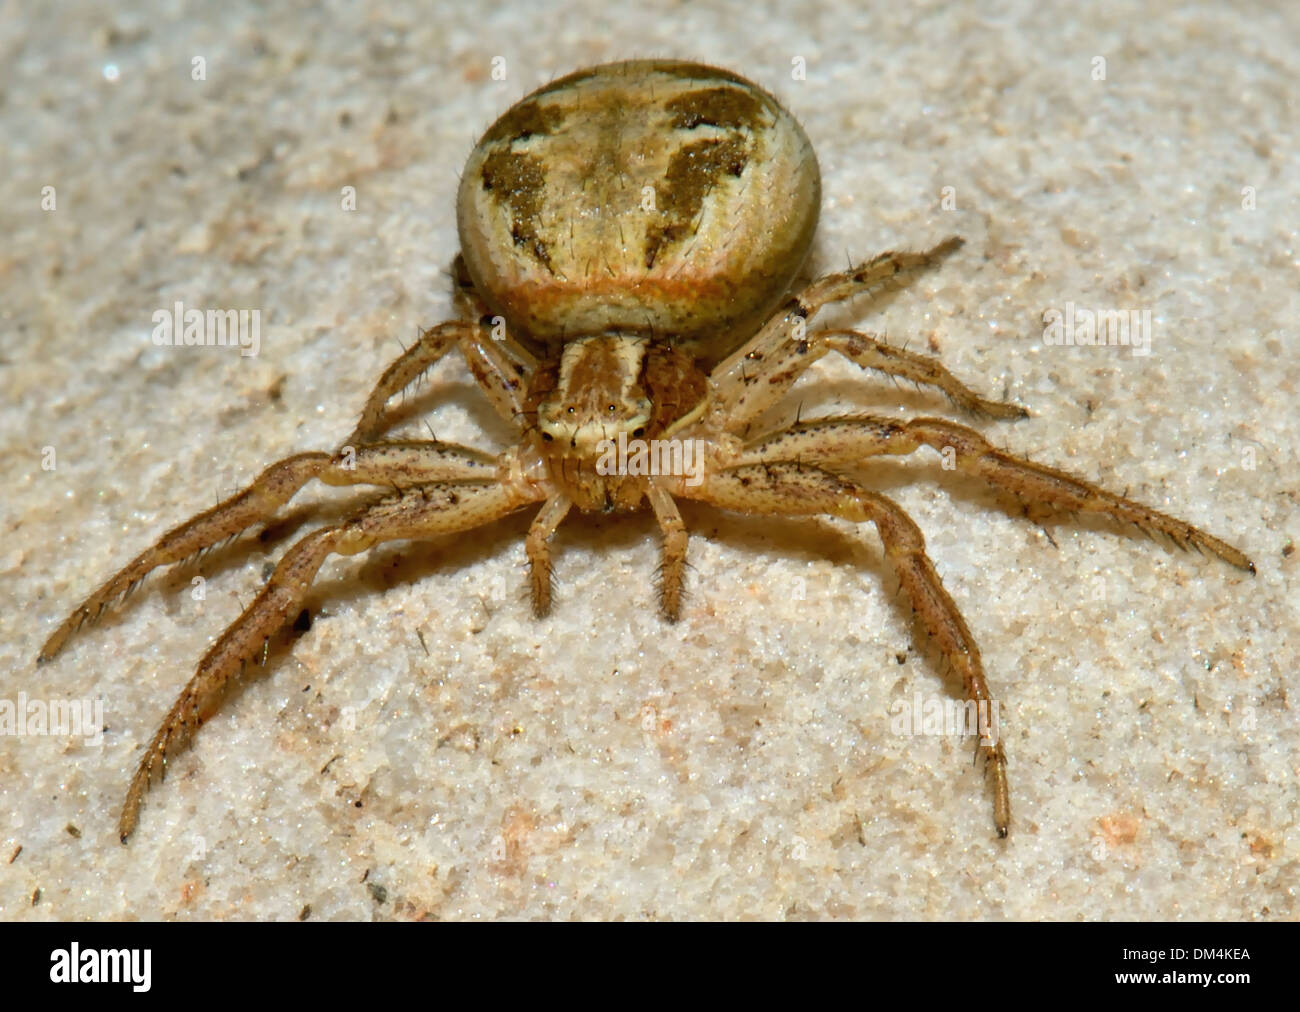 Gros plan d'une femme,un terrain d'entente, le crabe Xysticus cristatus araignée,. Essex, UK Banque D'Images